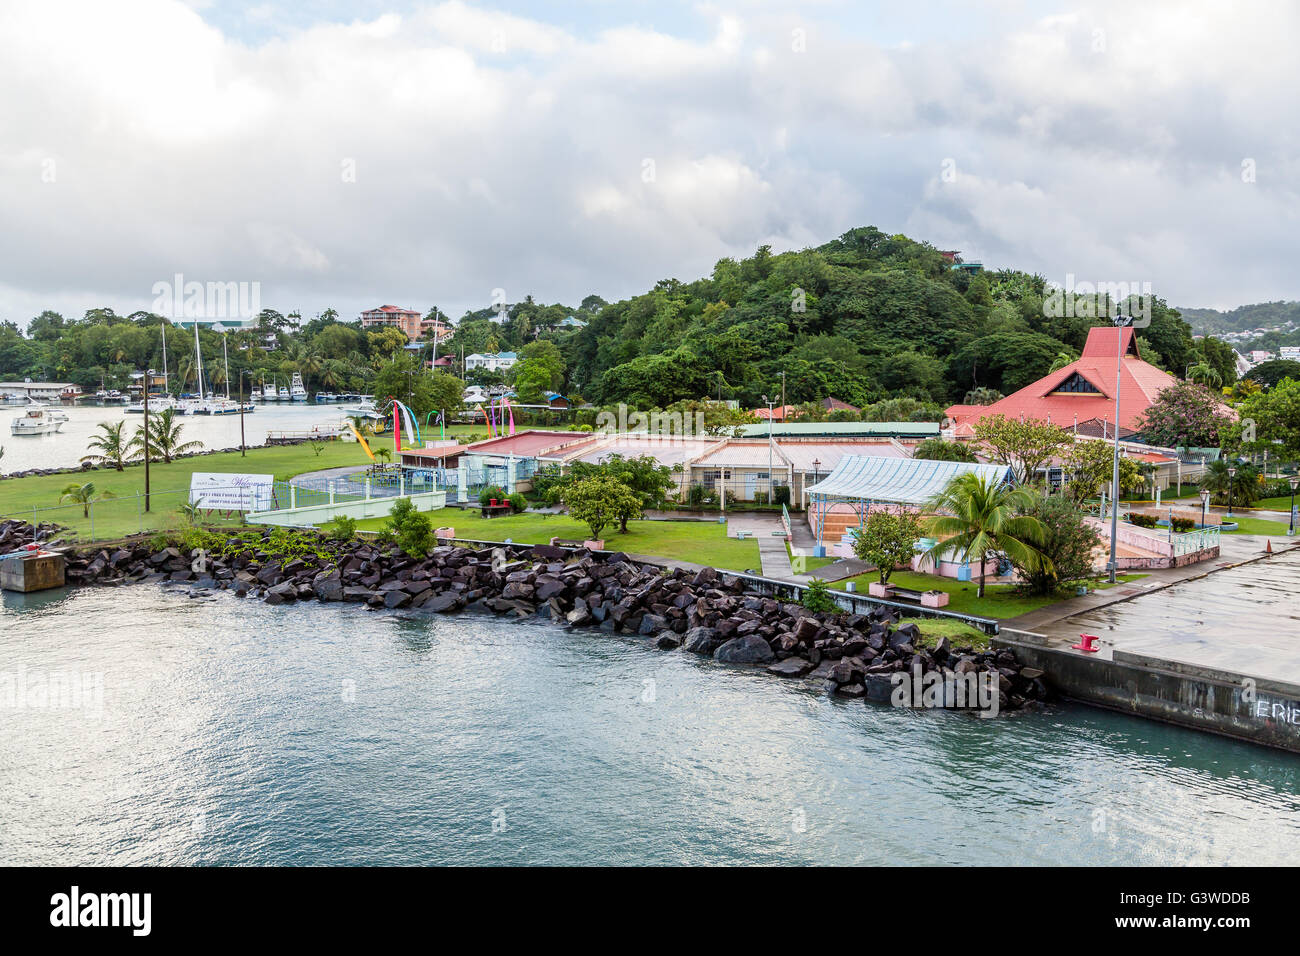 Port de croisière repas sur St Lucia avec commerces Banque D'Images